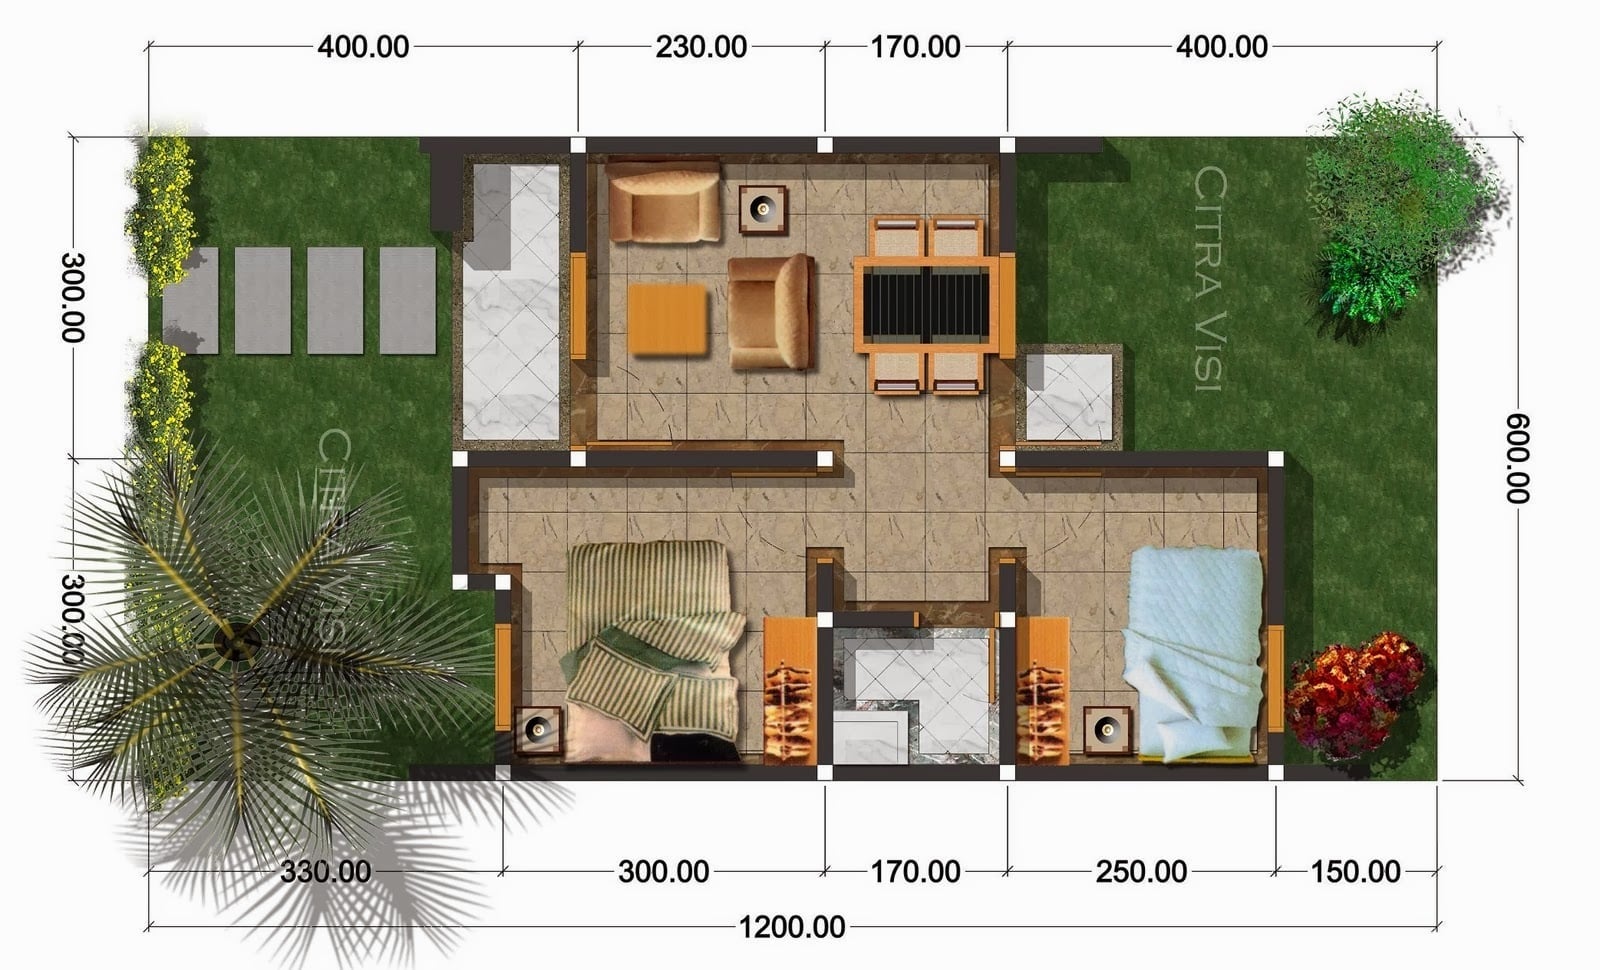 Terbaik Desain Rumah Sederhana 7x9 68 Menciptakan Rumah Merancang Inspirasi oleh Desain Rumah Sederhana 7x9